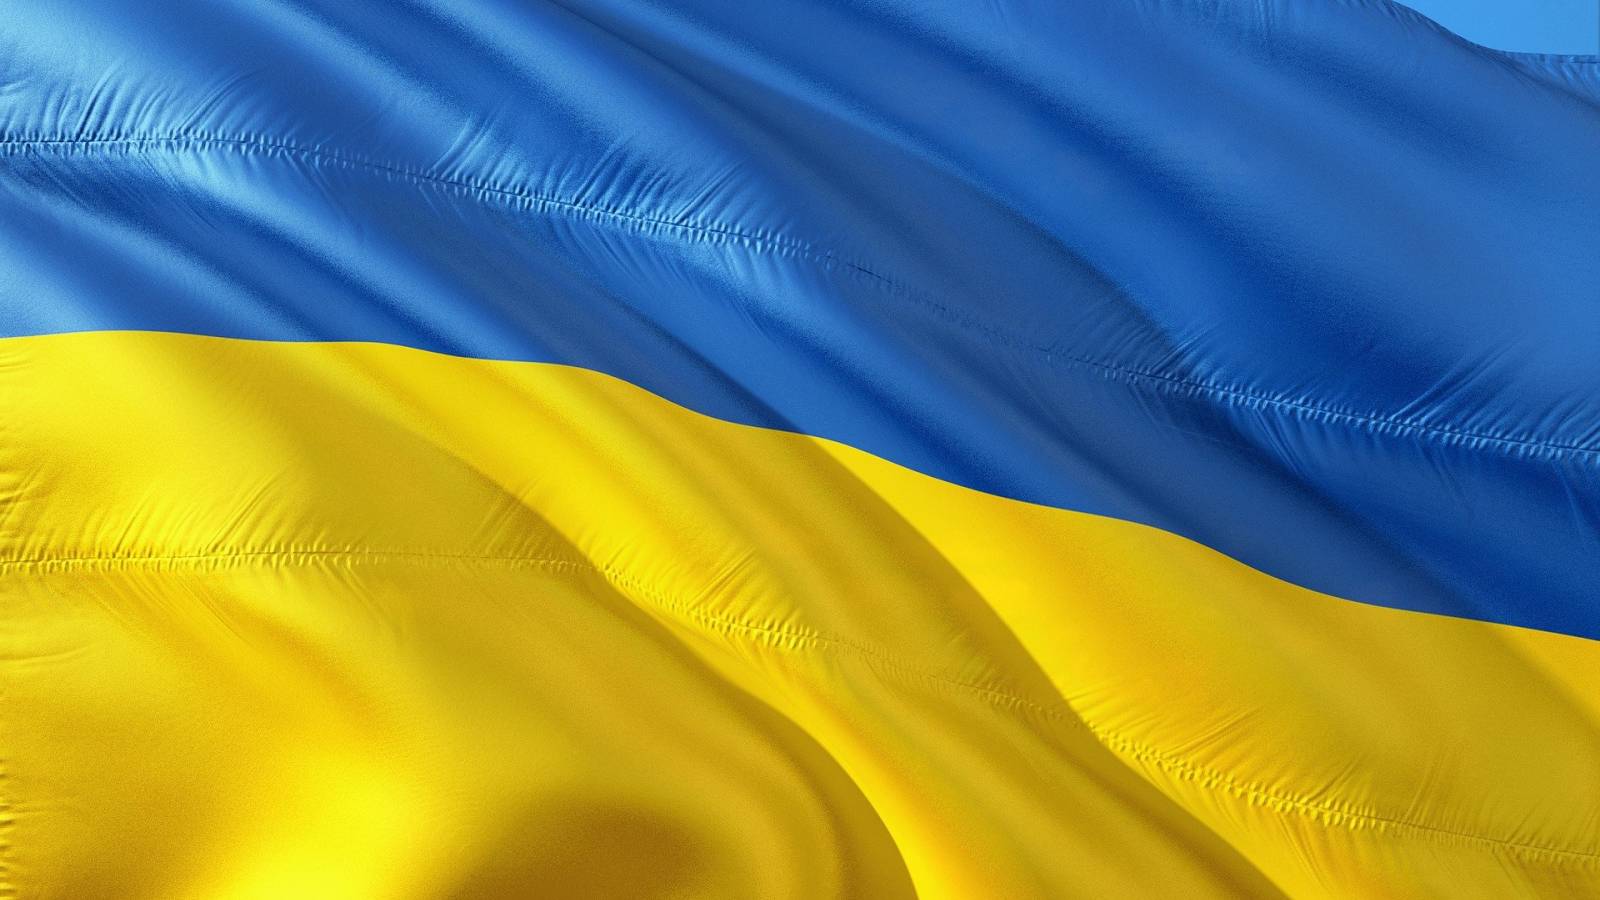 Sud-estul Ucrainei ar fi sub Controlul Rusiei, Existand Legatura Terestra cu Crimeea